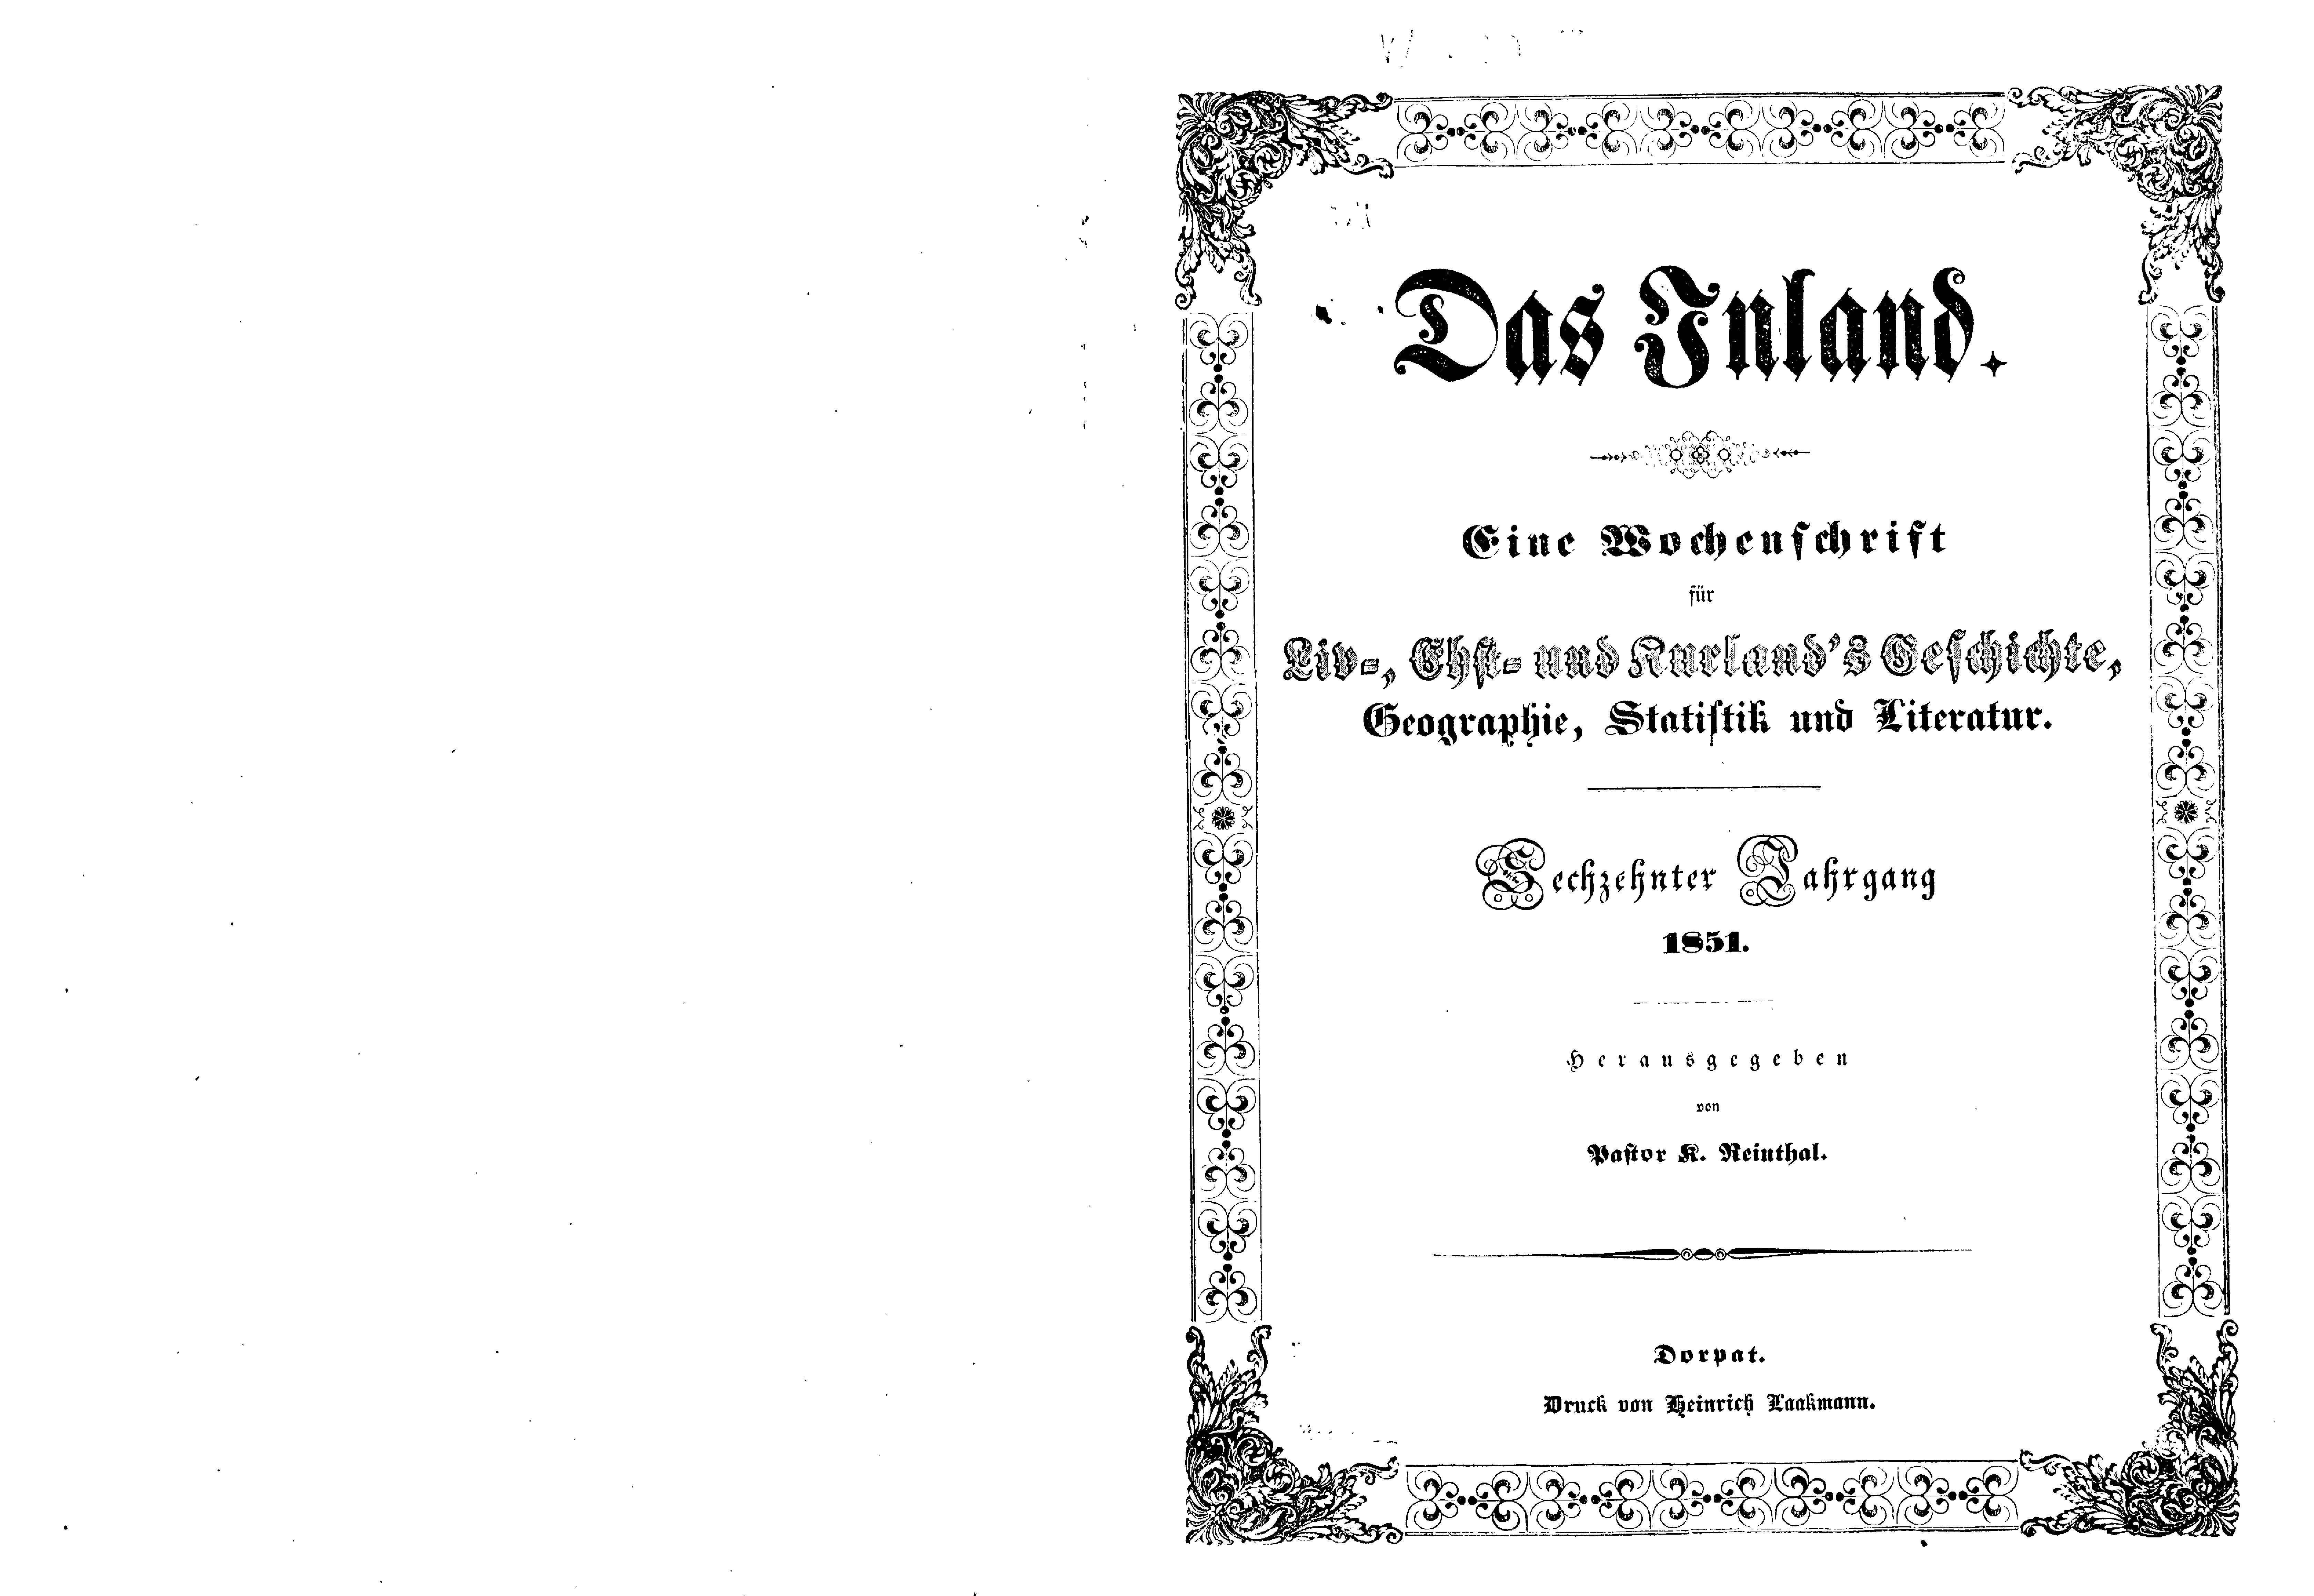 Das Inland [16] (1851) | 1. Title page